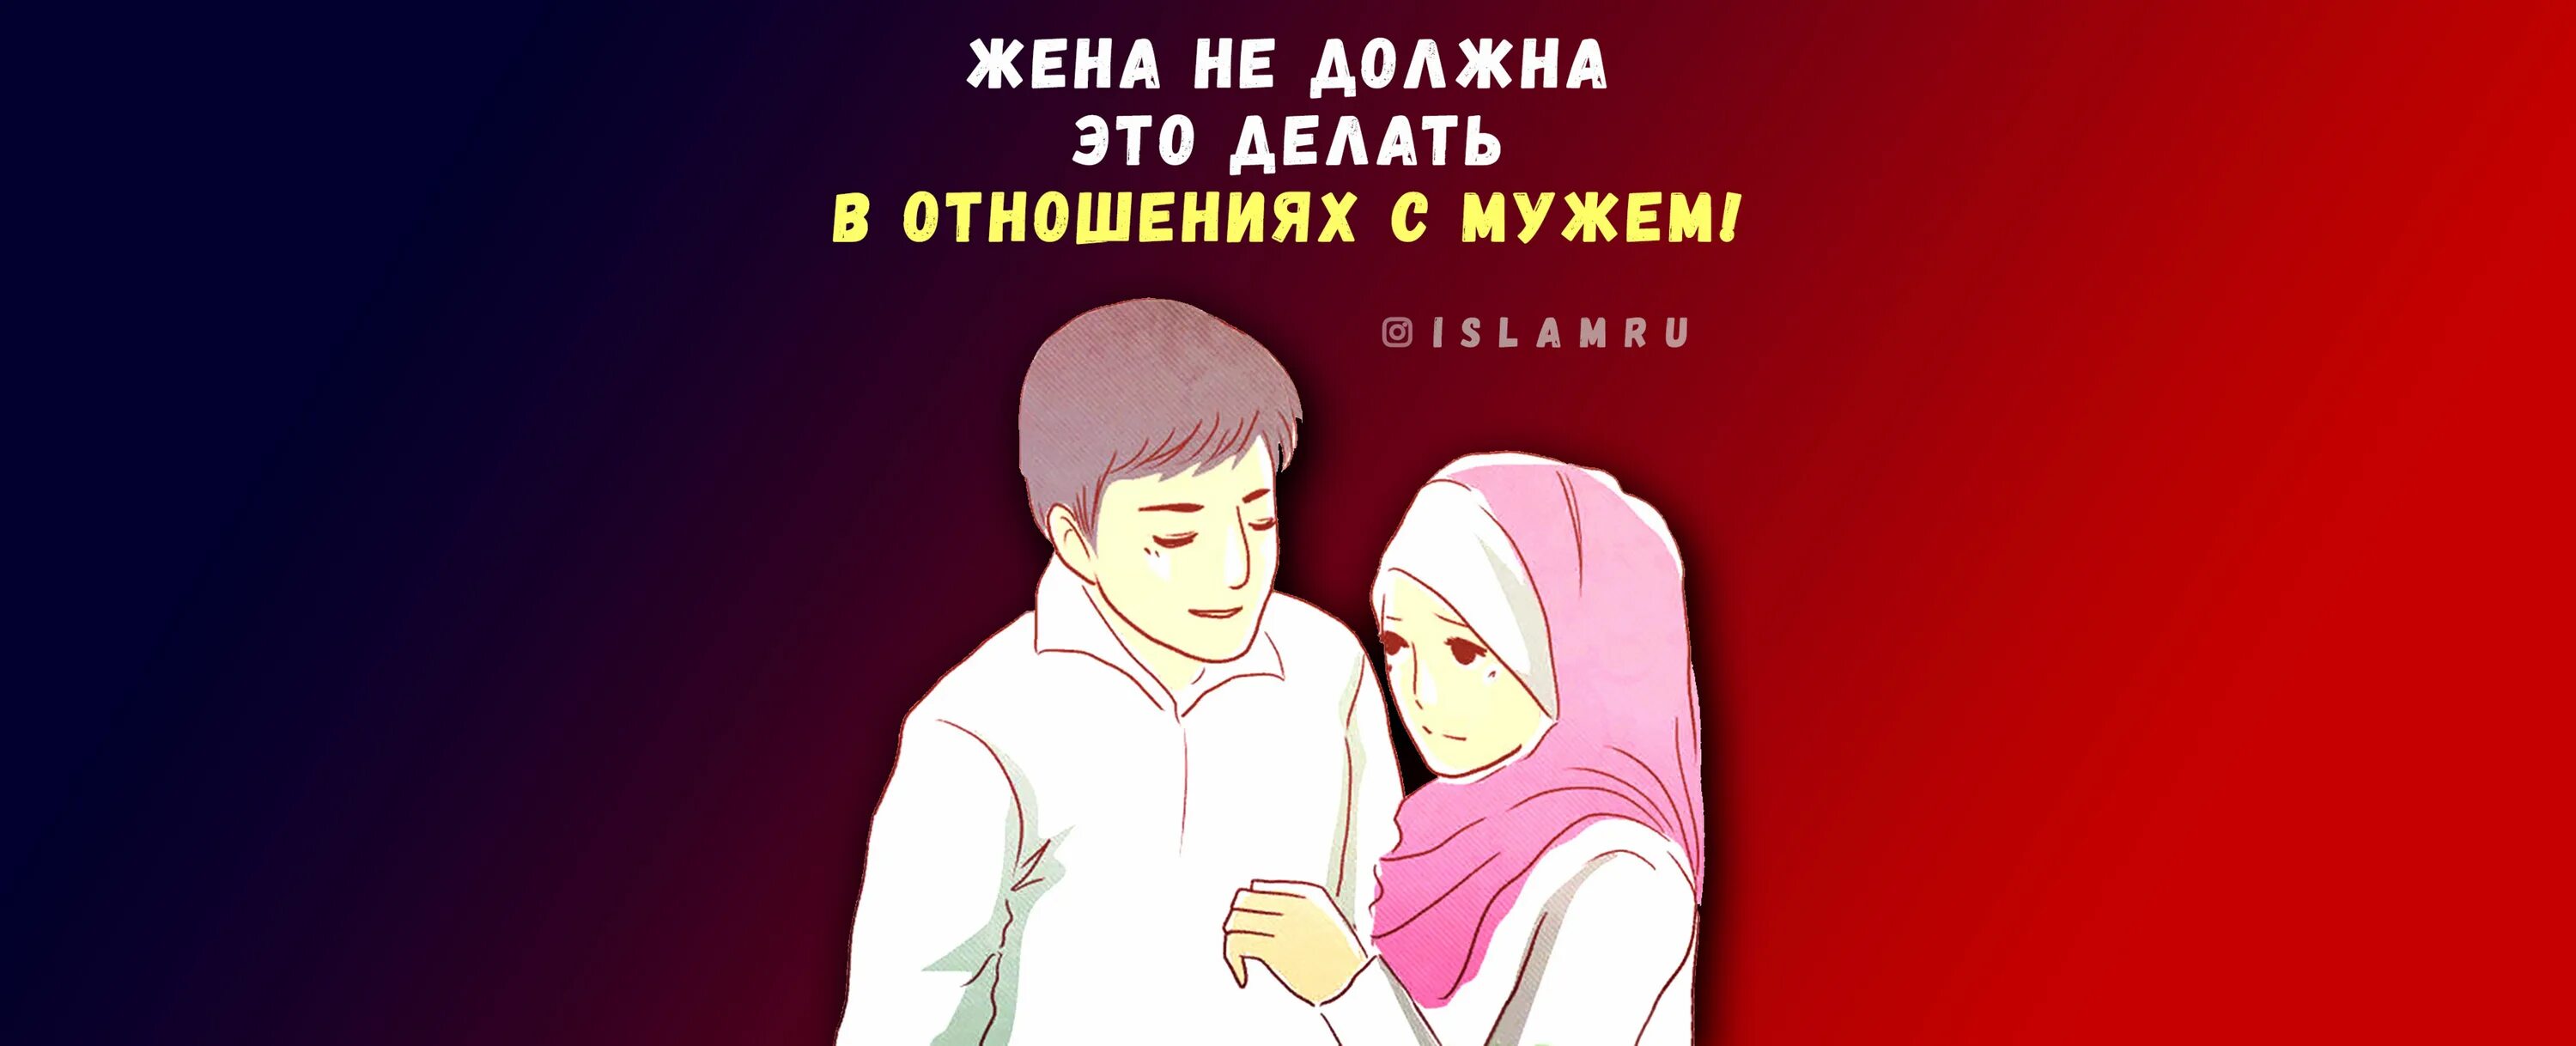 Родители мужа в исламе. Покорность мужу в Исламе. Любовь мужа и жены в Исламе. Непослушание жены мужу в Исламе. Верная жена в Исламе.